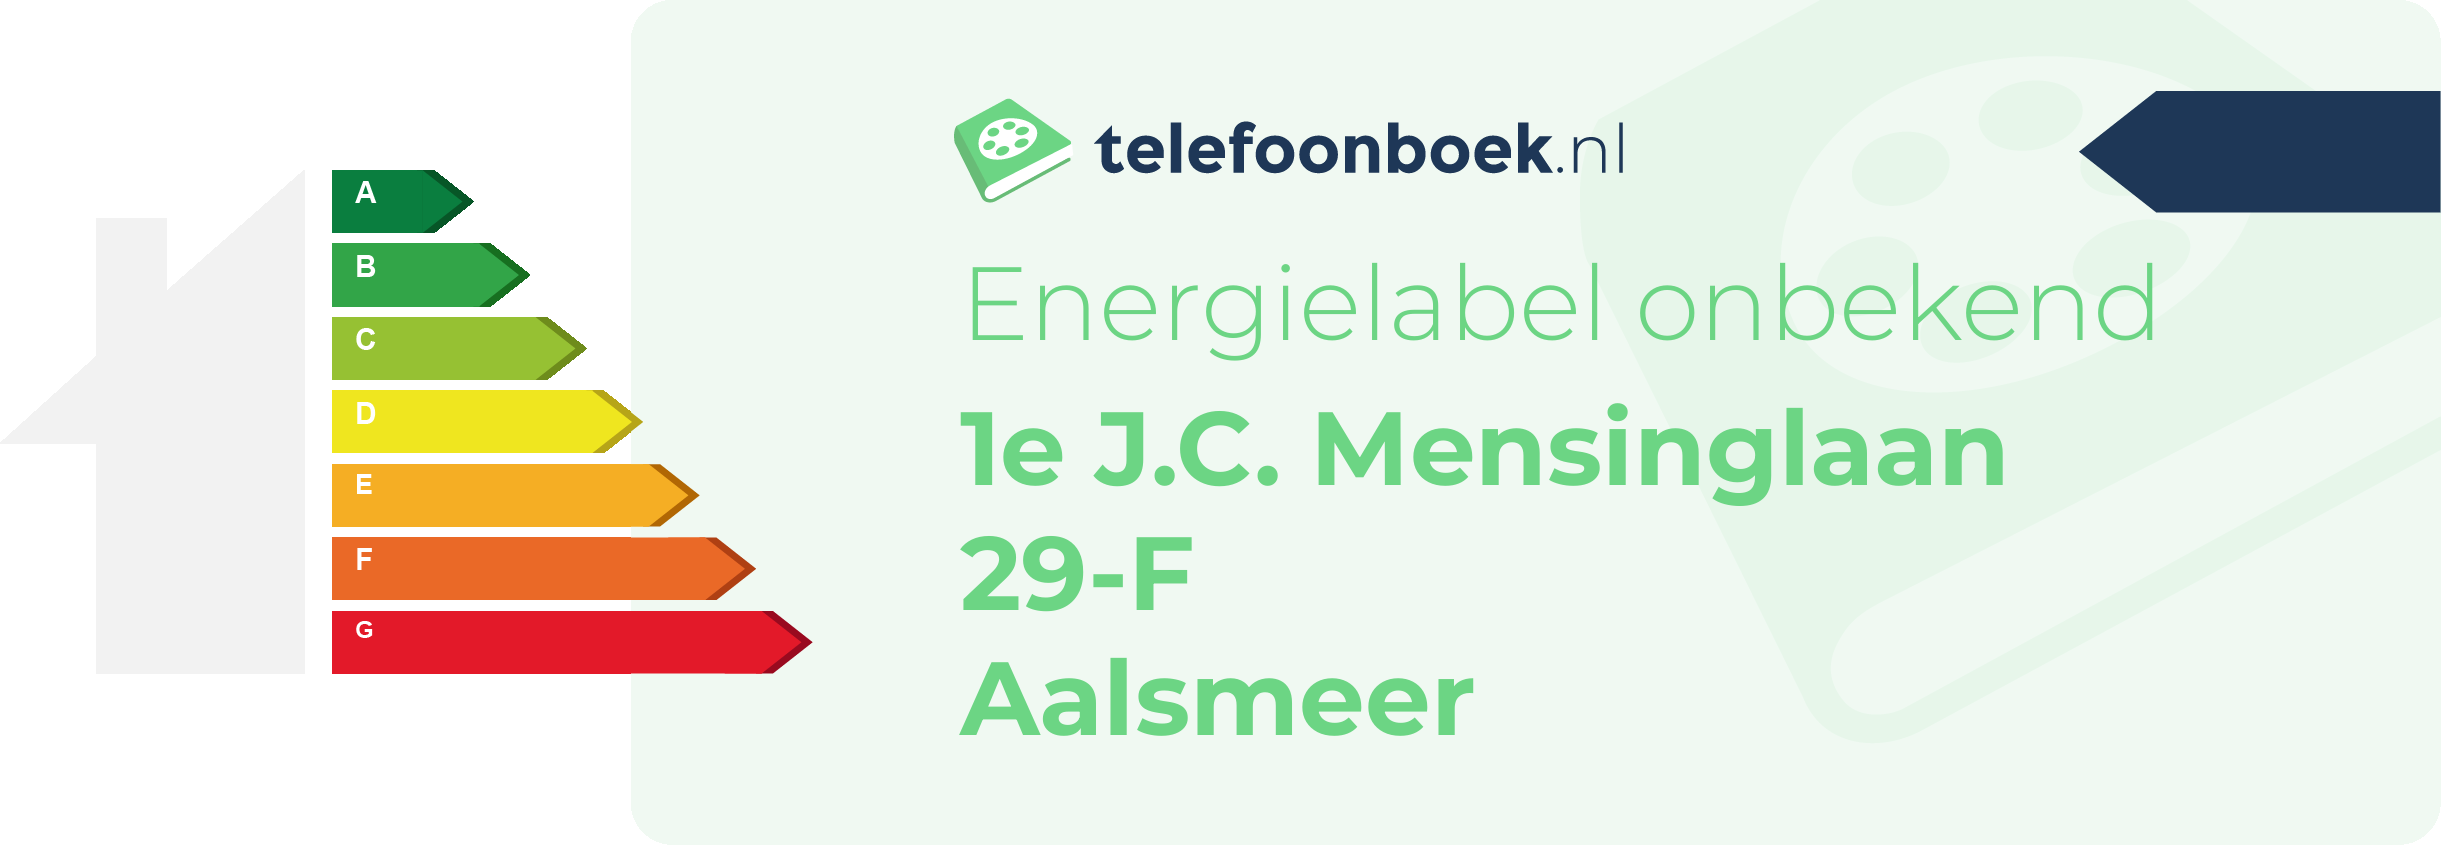 Energielabel 1e J.C. Mensinglaan 29-F Aalsmeer